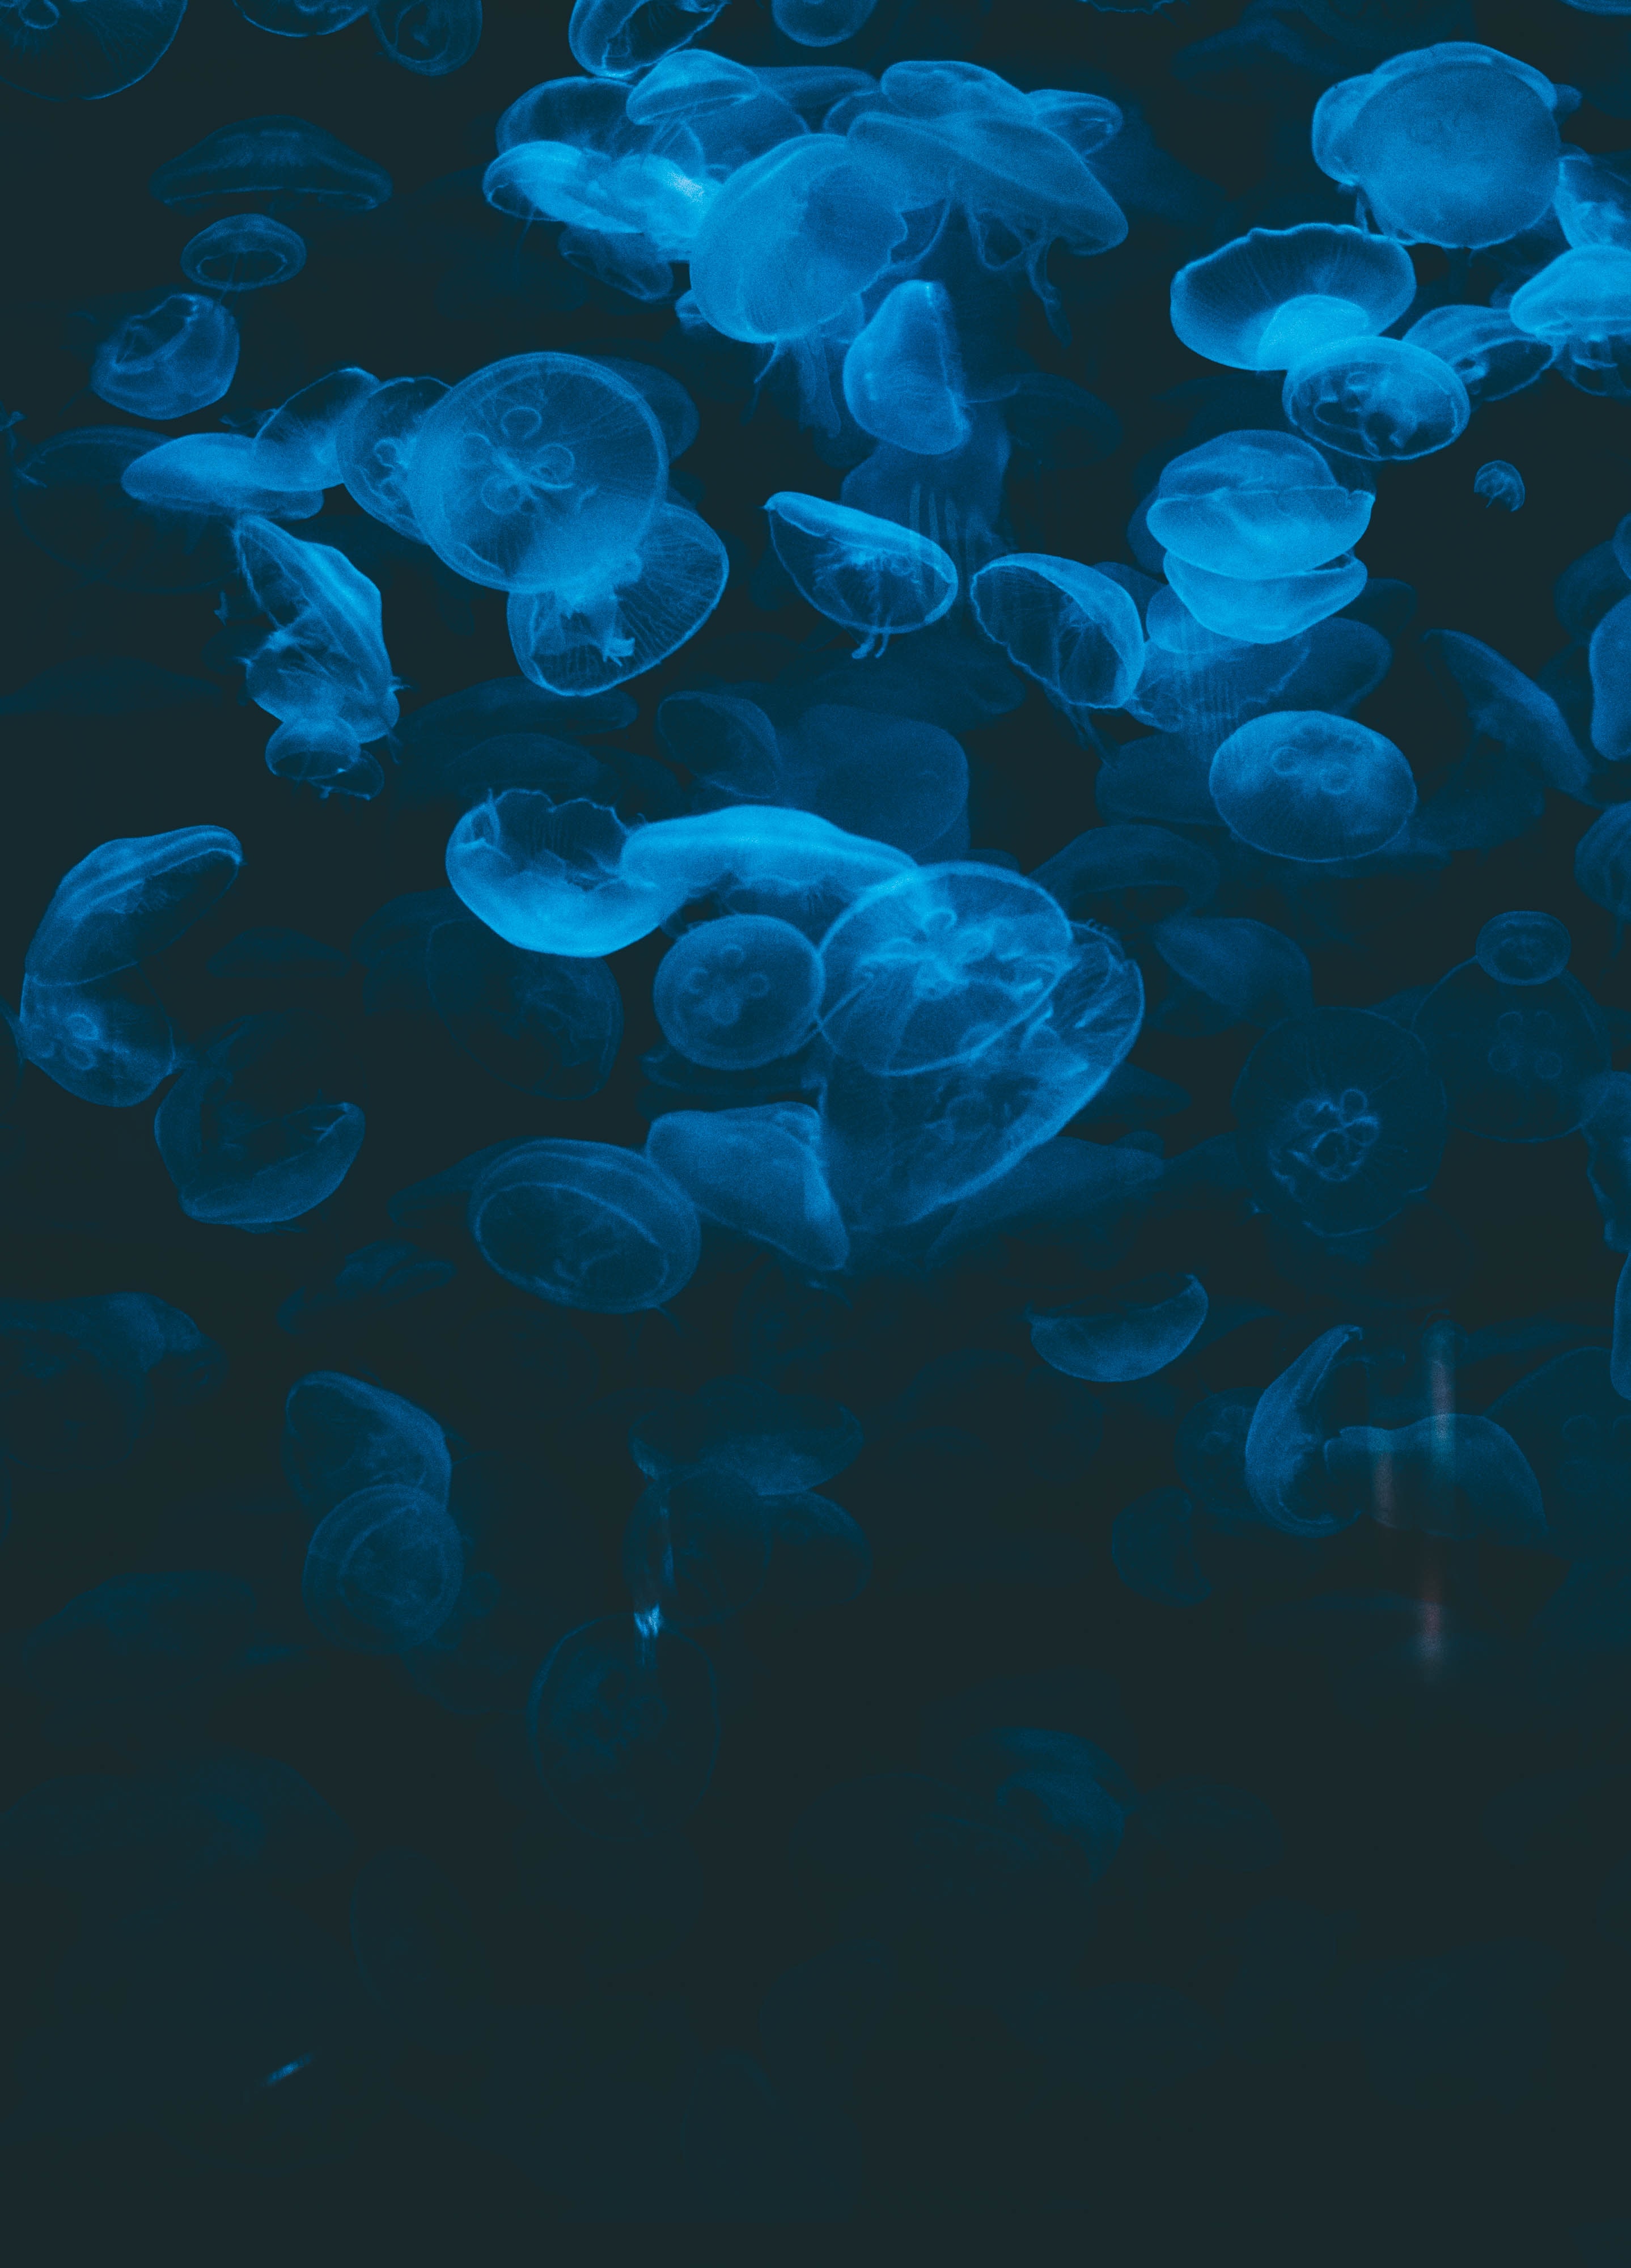 under water, jellyfish, animals, blue, transparent, dark, underwater